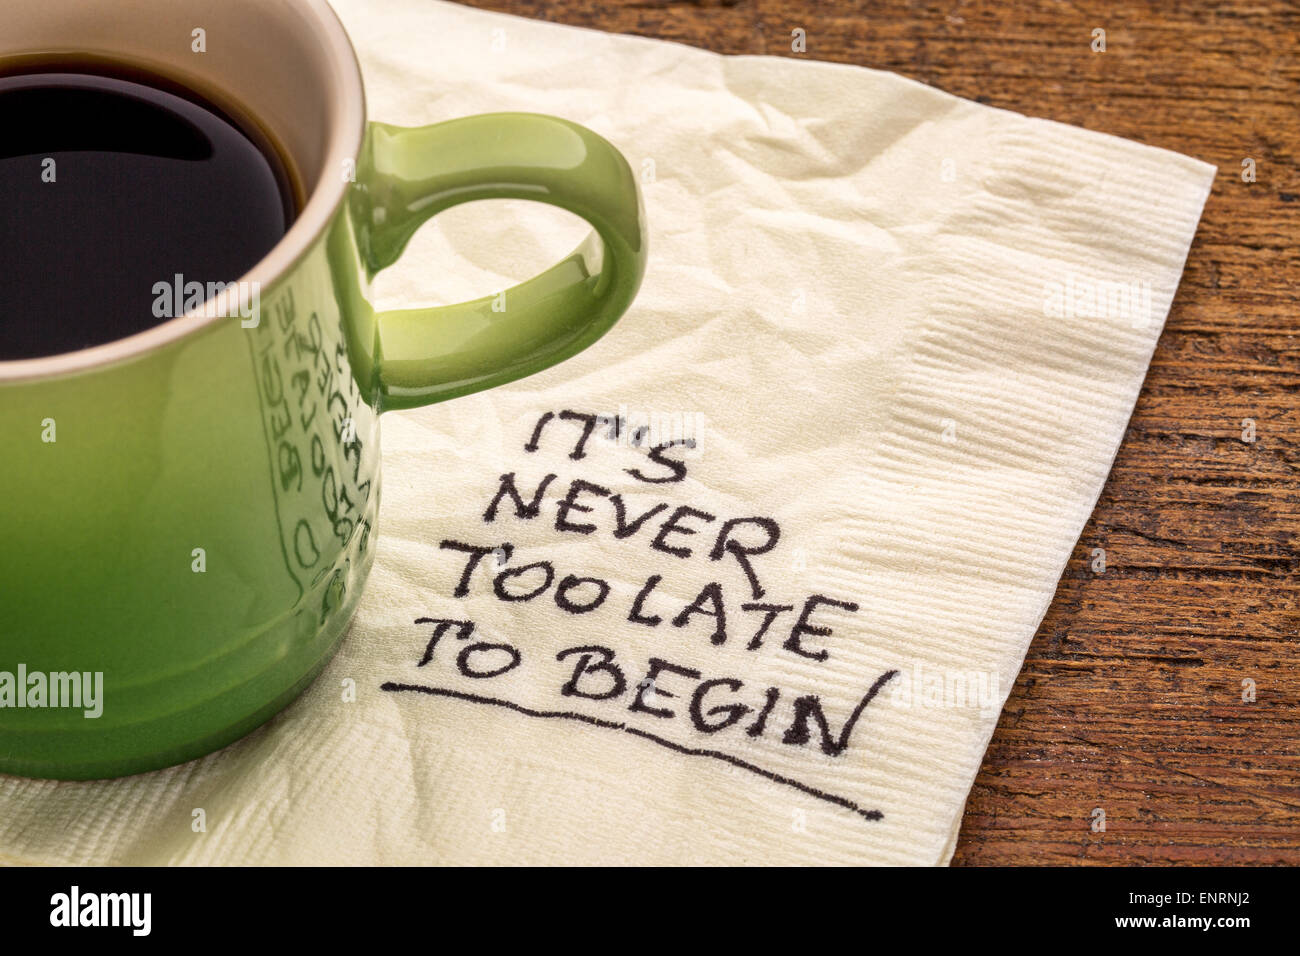 Il n'est jamais trop tard pour commencer - rappel de motivation sur une serviette avec une tasse de café Banque D'Images